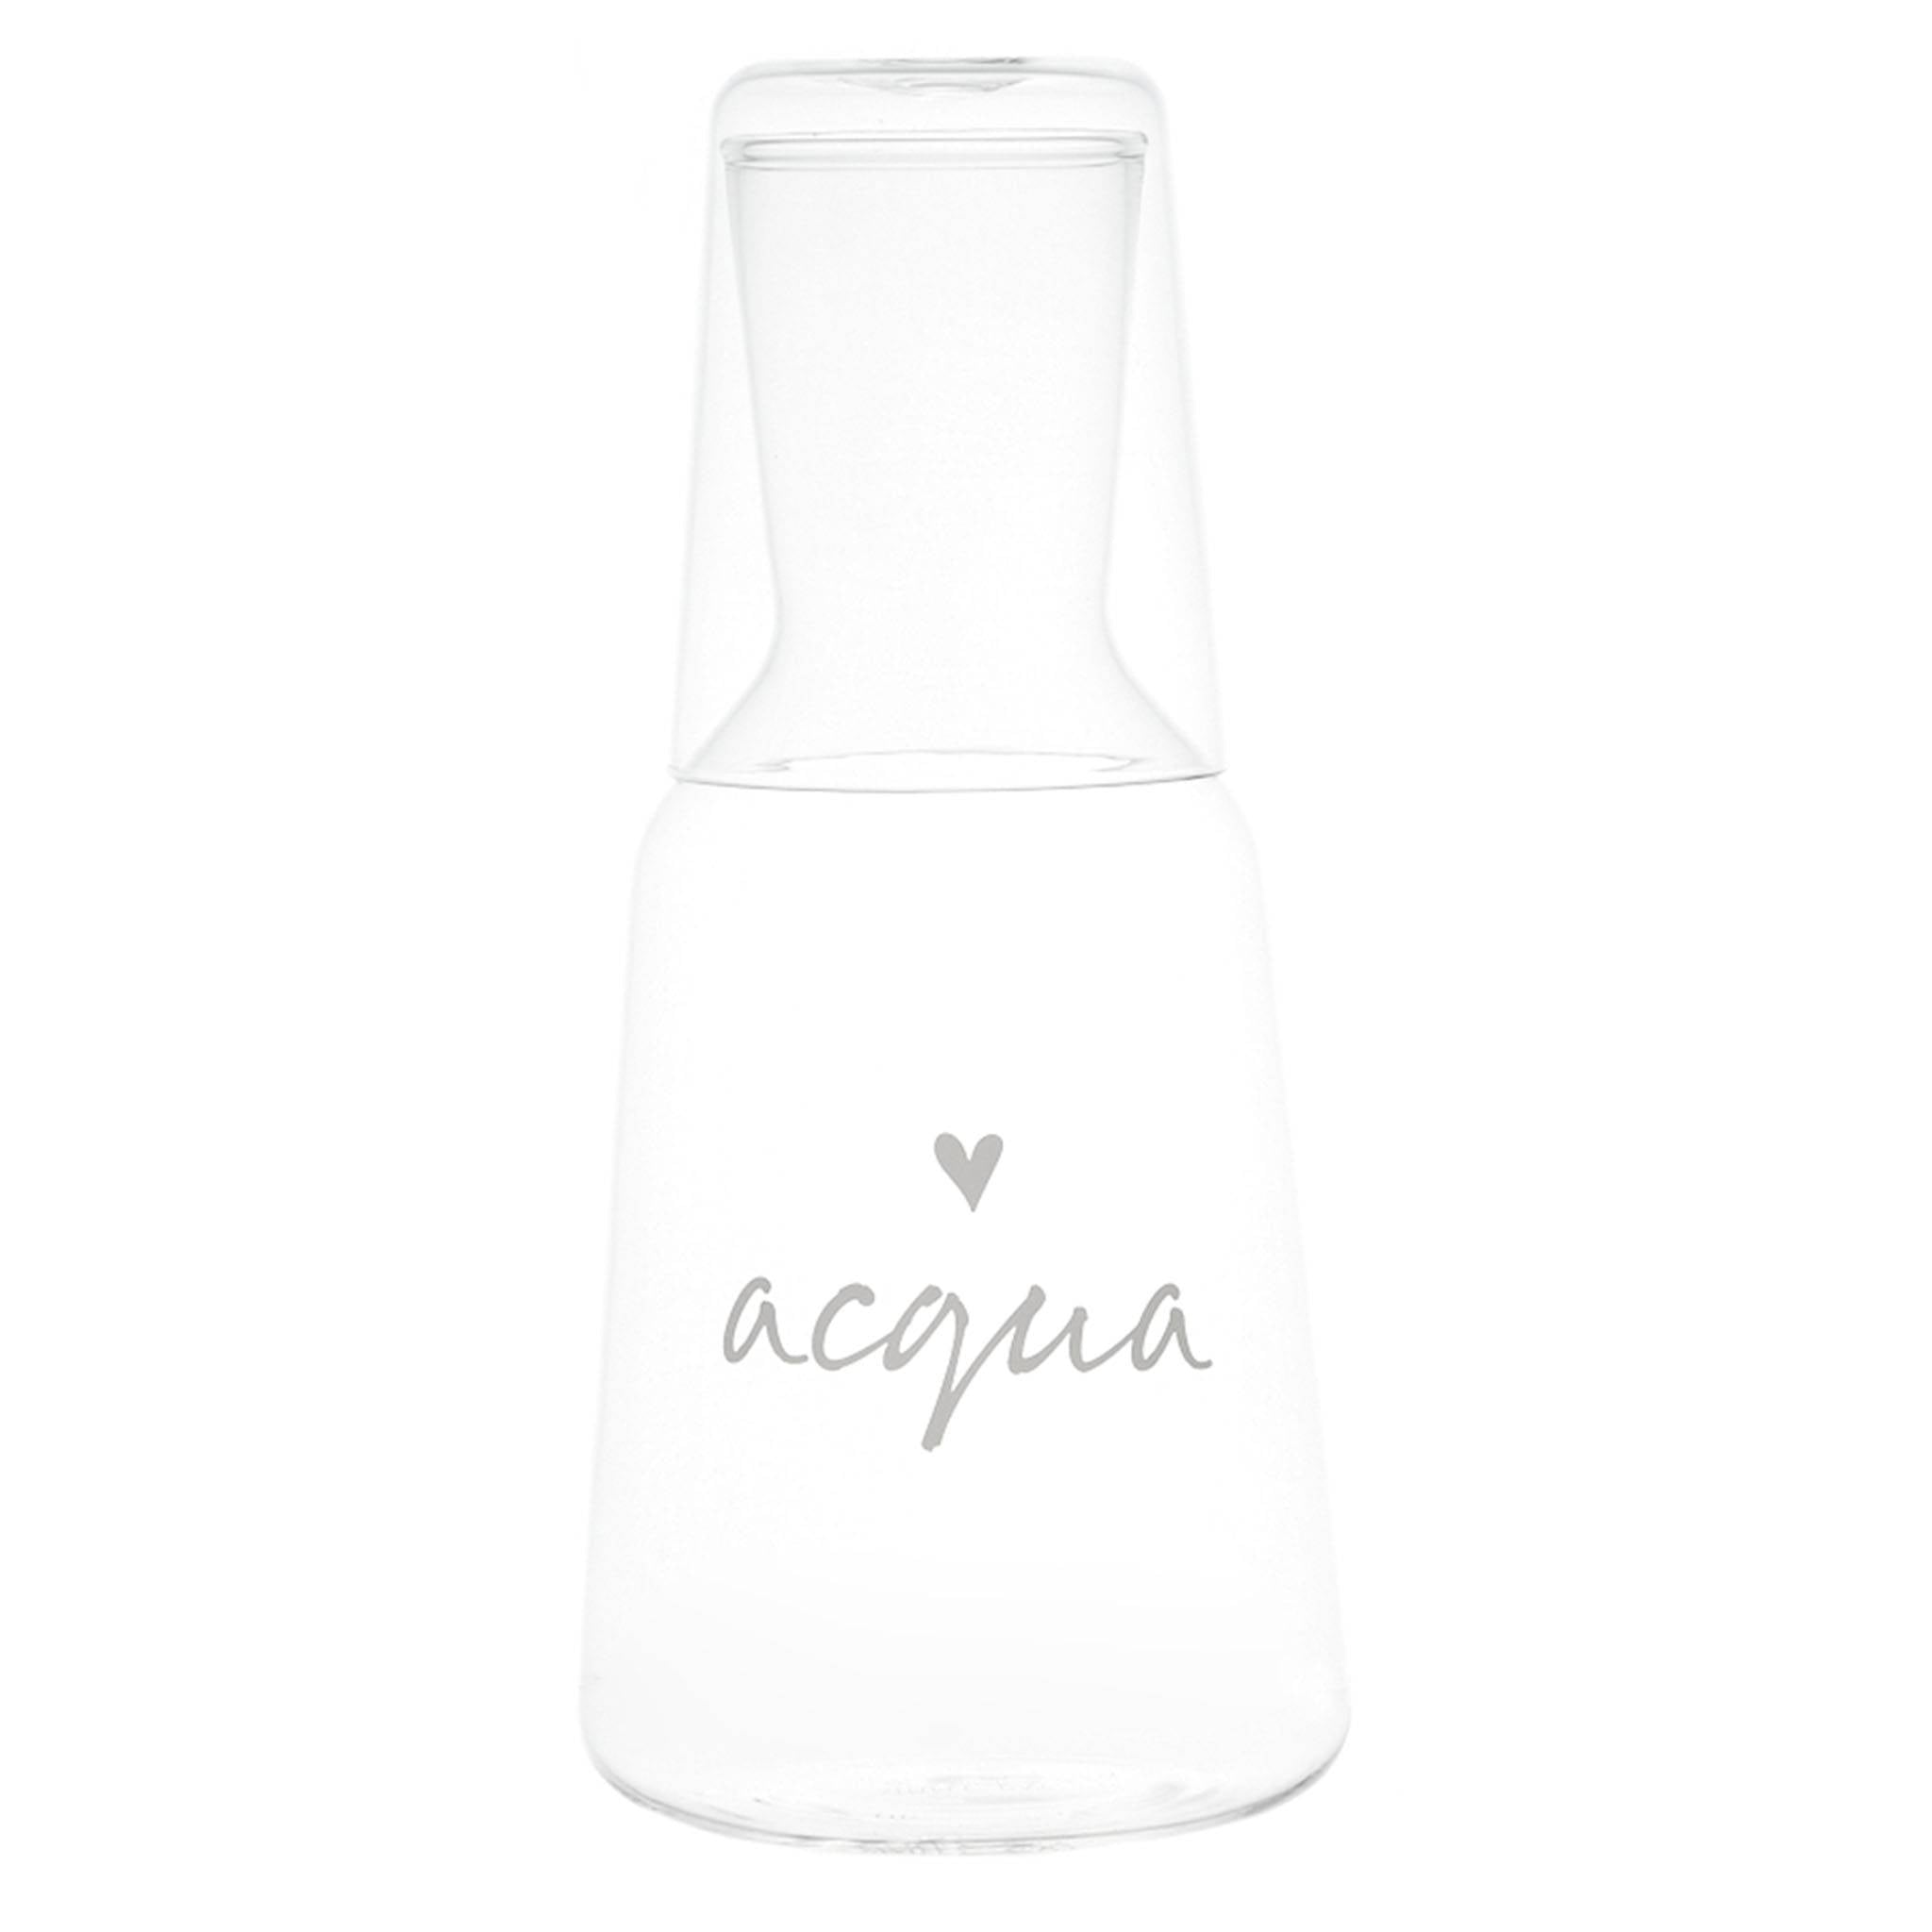 Glasflasche mit Glas und "Acqua" Dekor